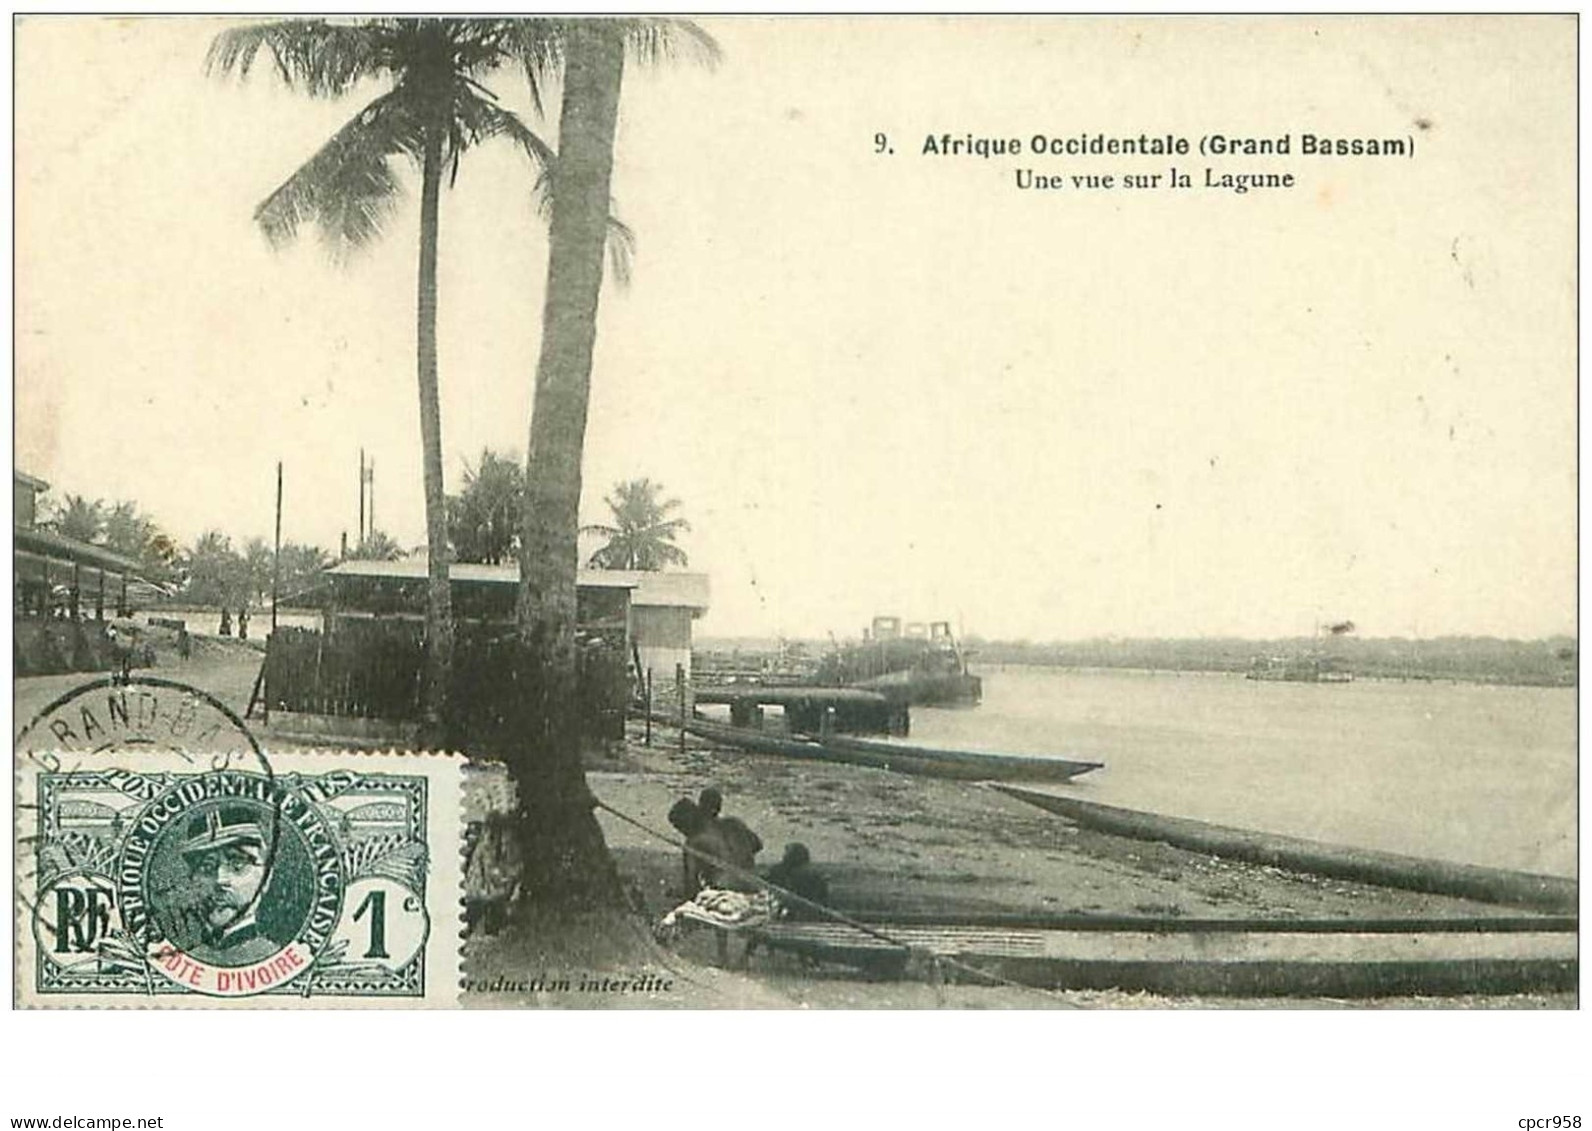 Cote D Ivoire. N°35373.une Vue Sur La Lagrune. Afrique Occidentale.grand Bassam - Costa D'Avorio